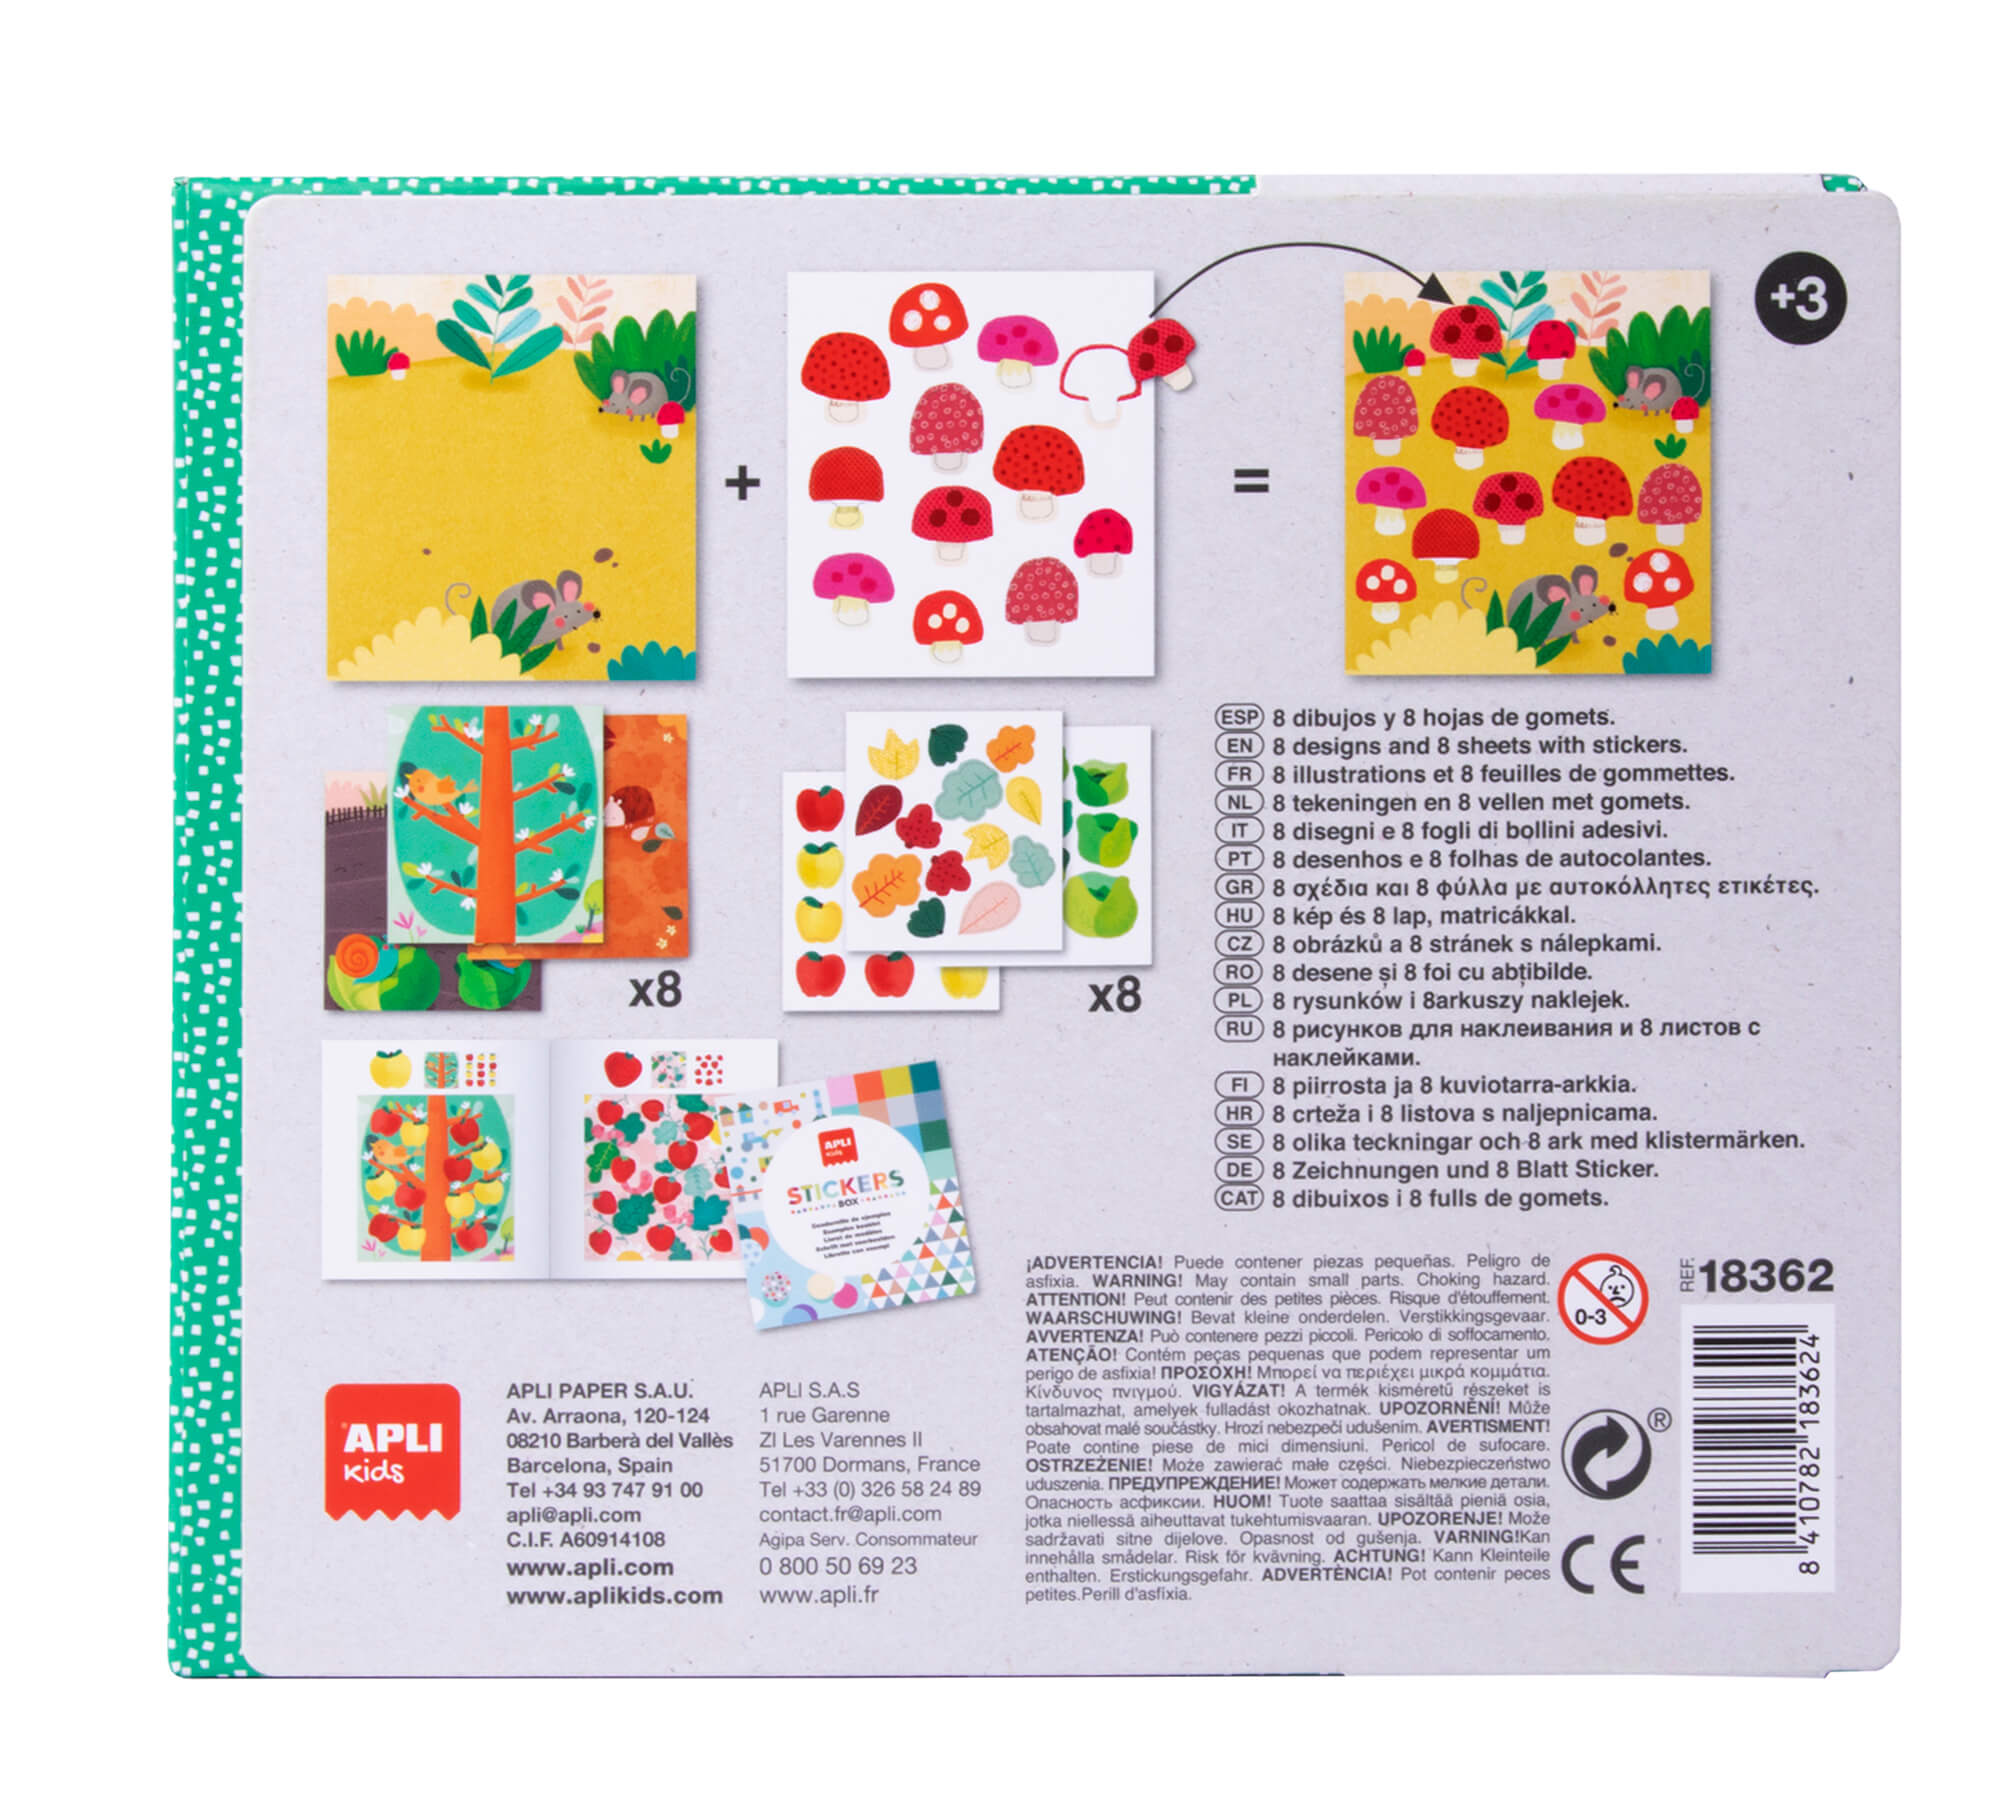 Apli Kids Ladybug Eraser Games - 8 Feuilles Illustrées de 200G - 8 Feuilles de Gommes Géométriques Amovibles - Haute Valeur Pédagogique - Boîte en Carton au Design Exclusif - Coloré